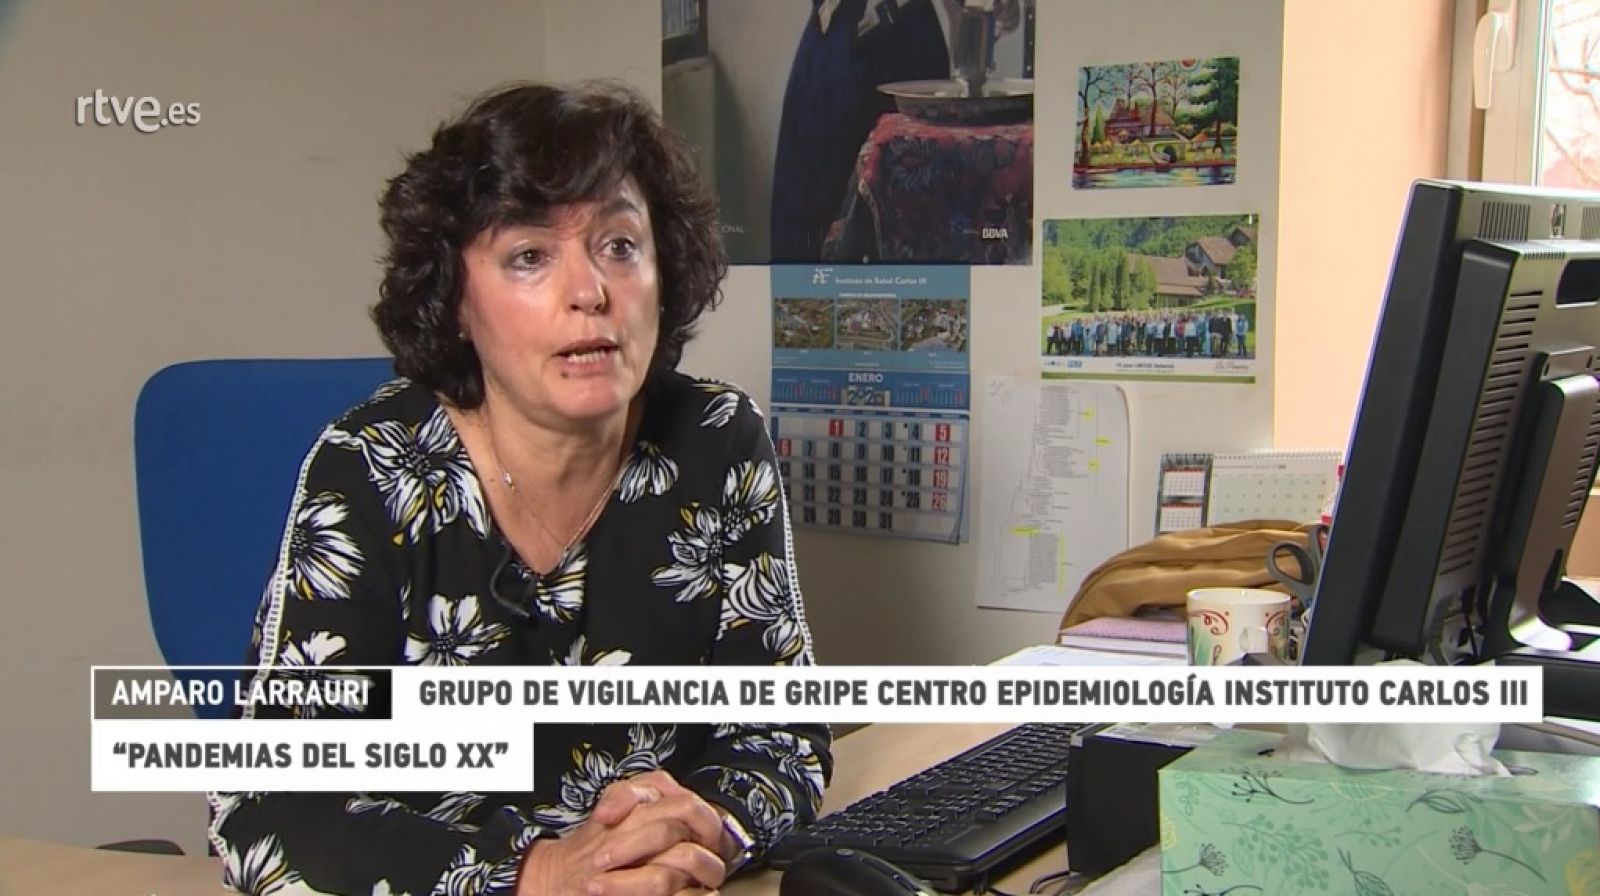 ¿Te acuerdas? | Amparo Larrauri (Instituto CarlosIII) - RTVE.es